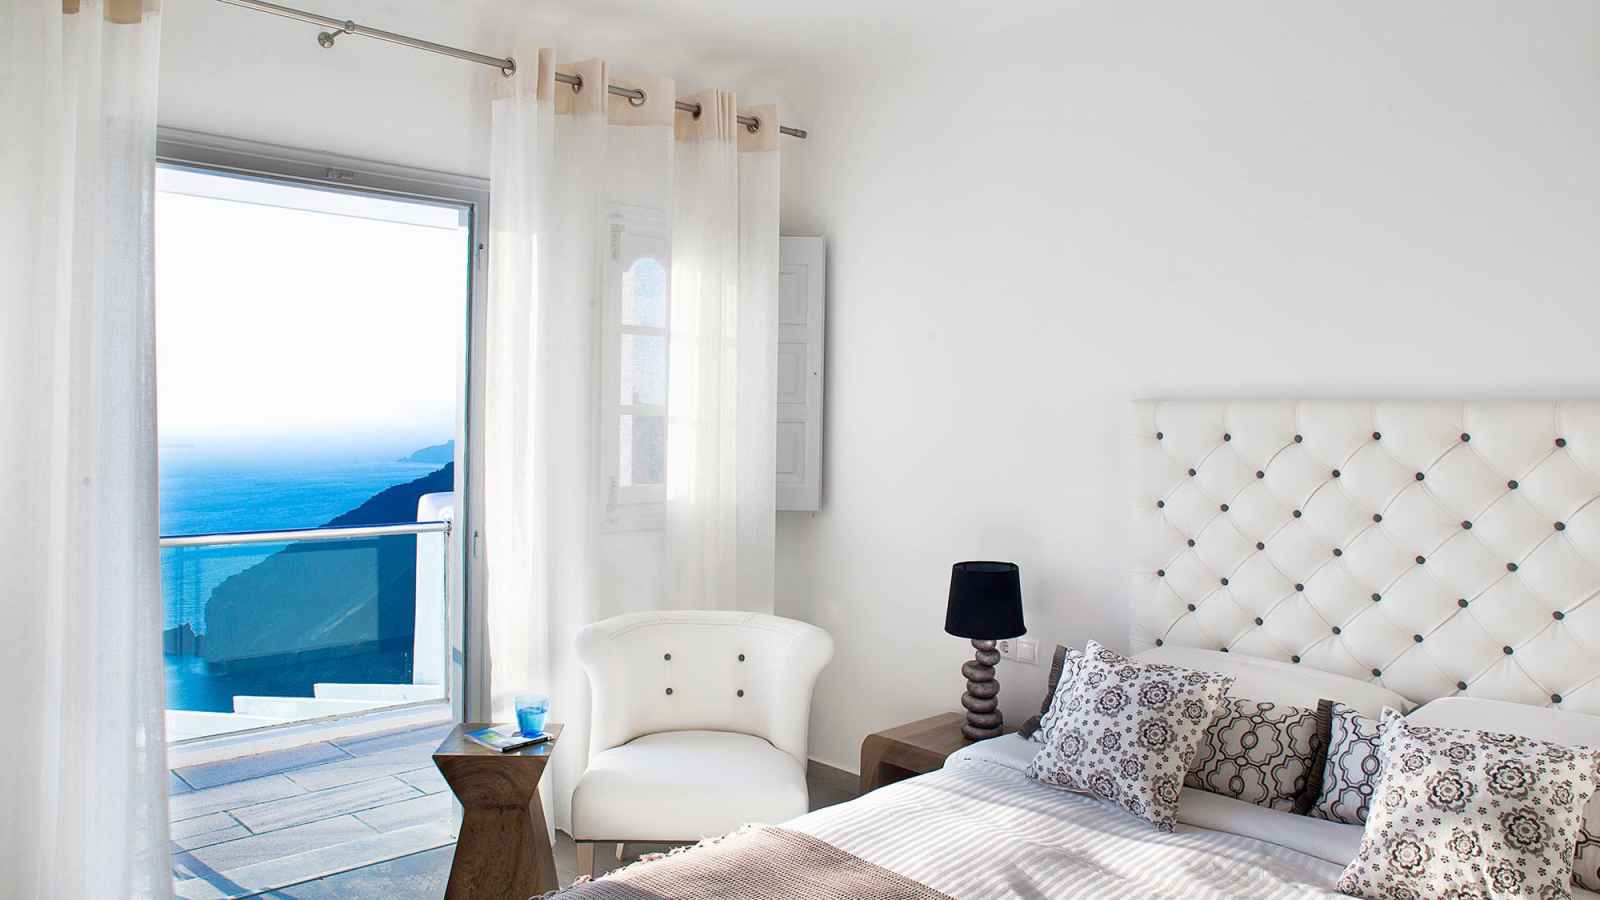 Grèce - Iles grecques - Les Cyclades - Santorin - Hôtel Belvedere Suites 4*